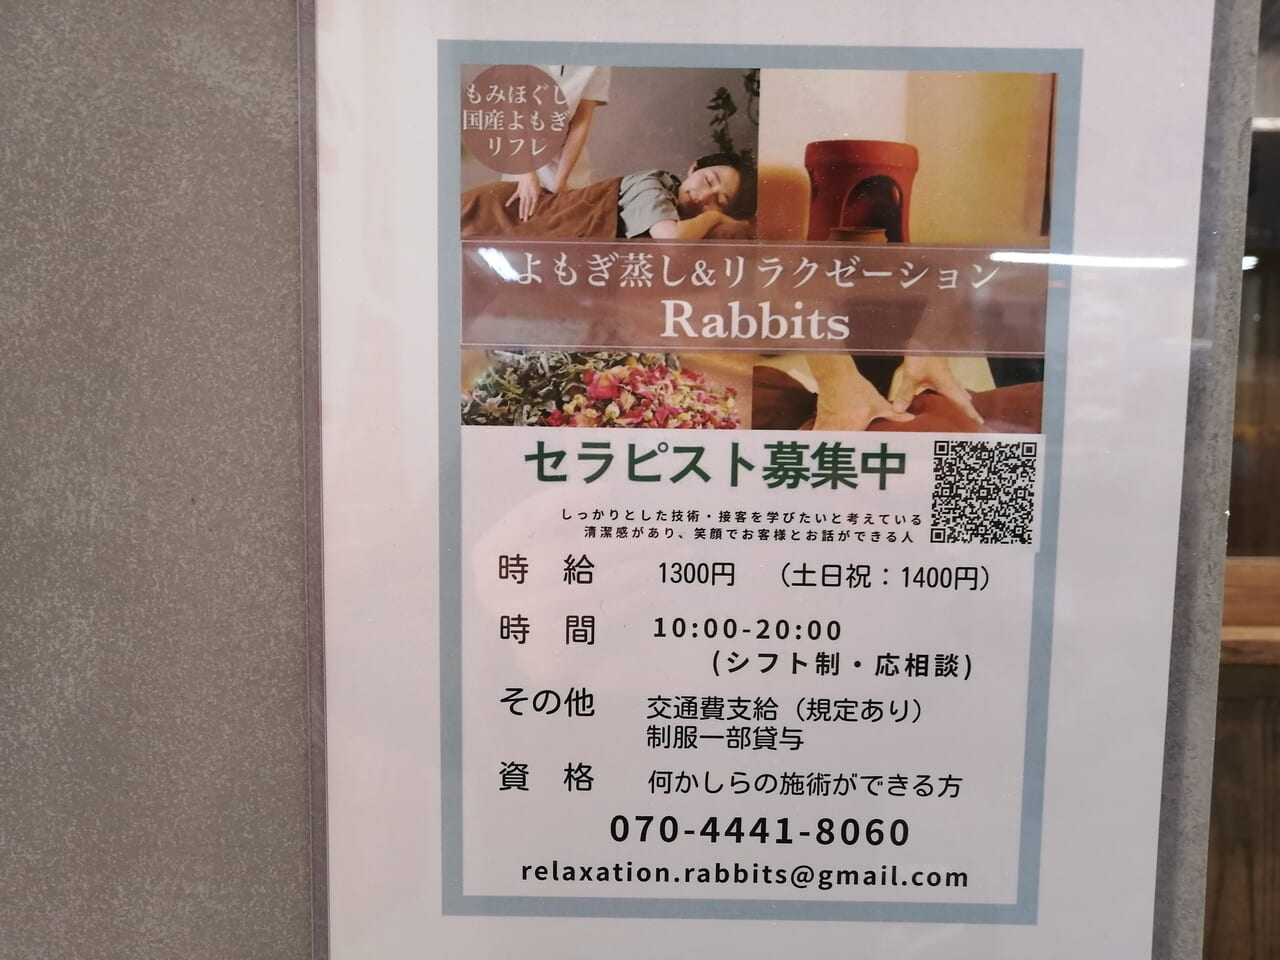 Cafe&ラテプリ Rabbits